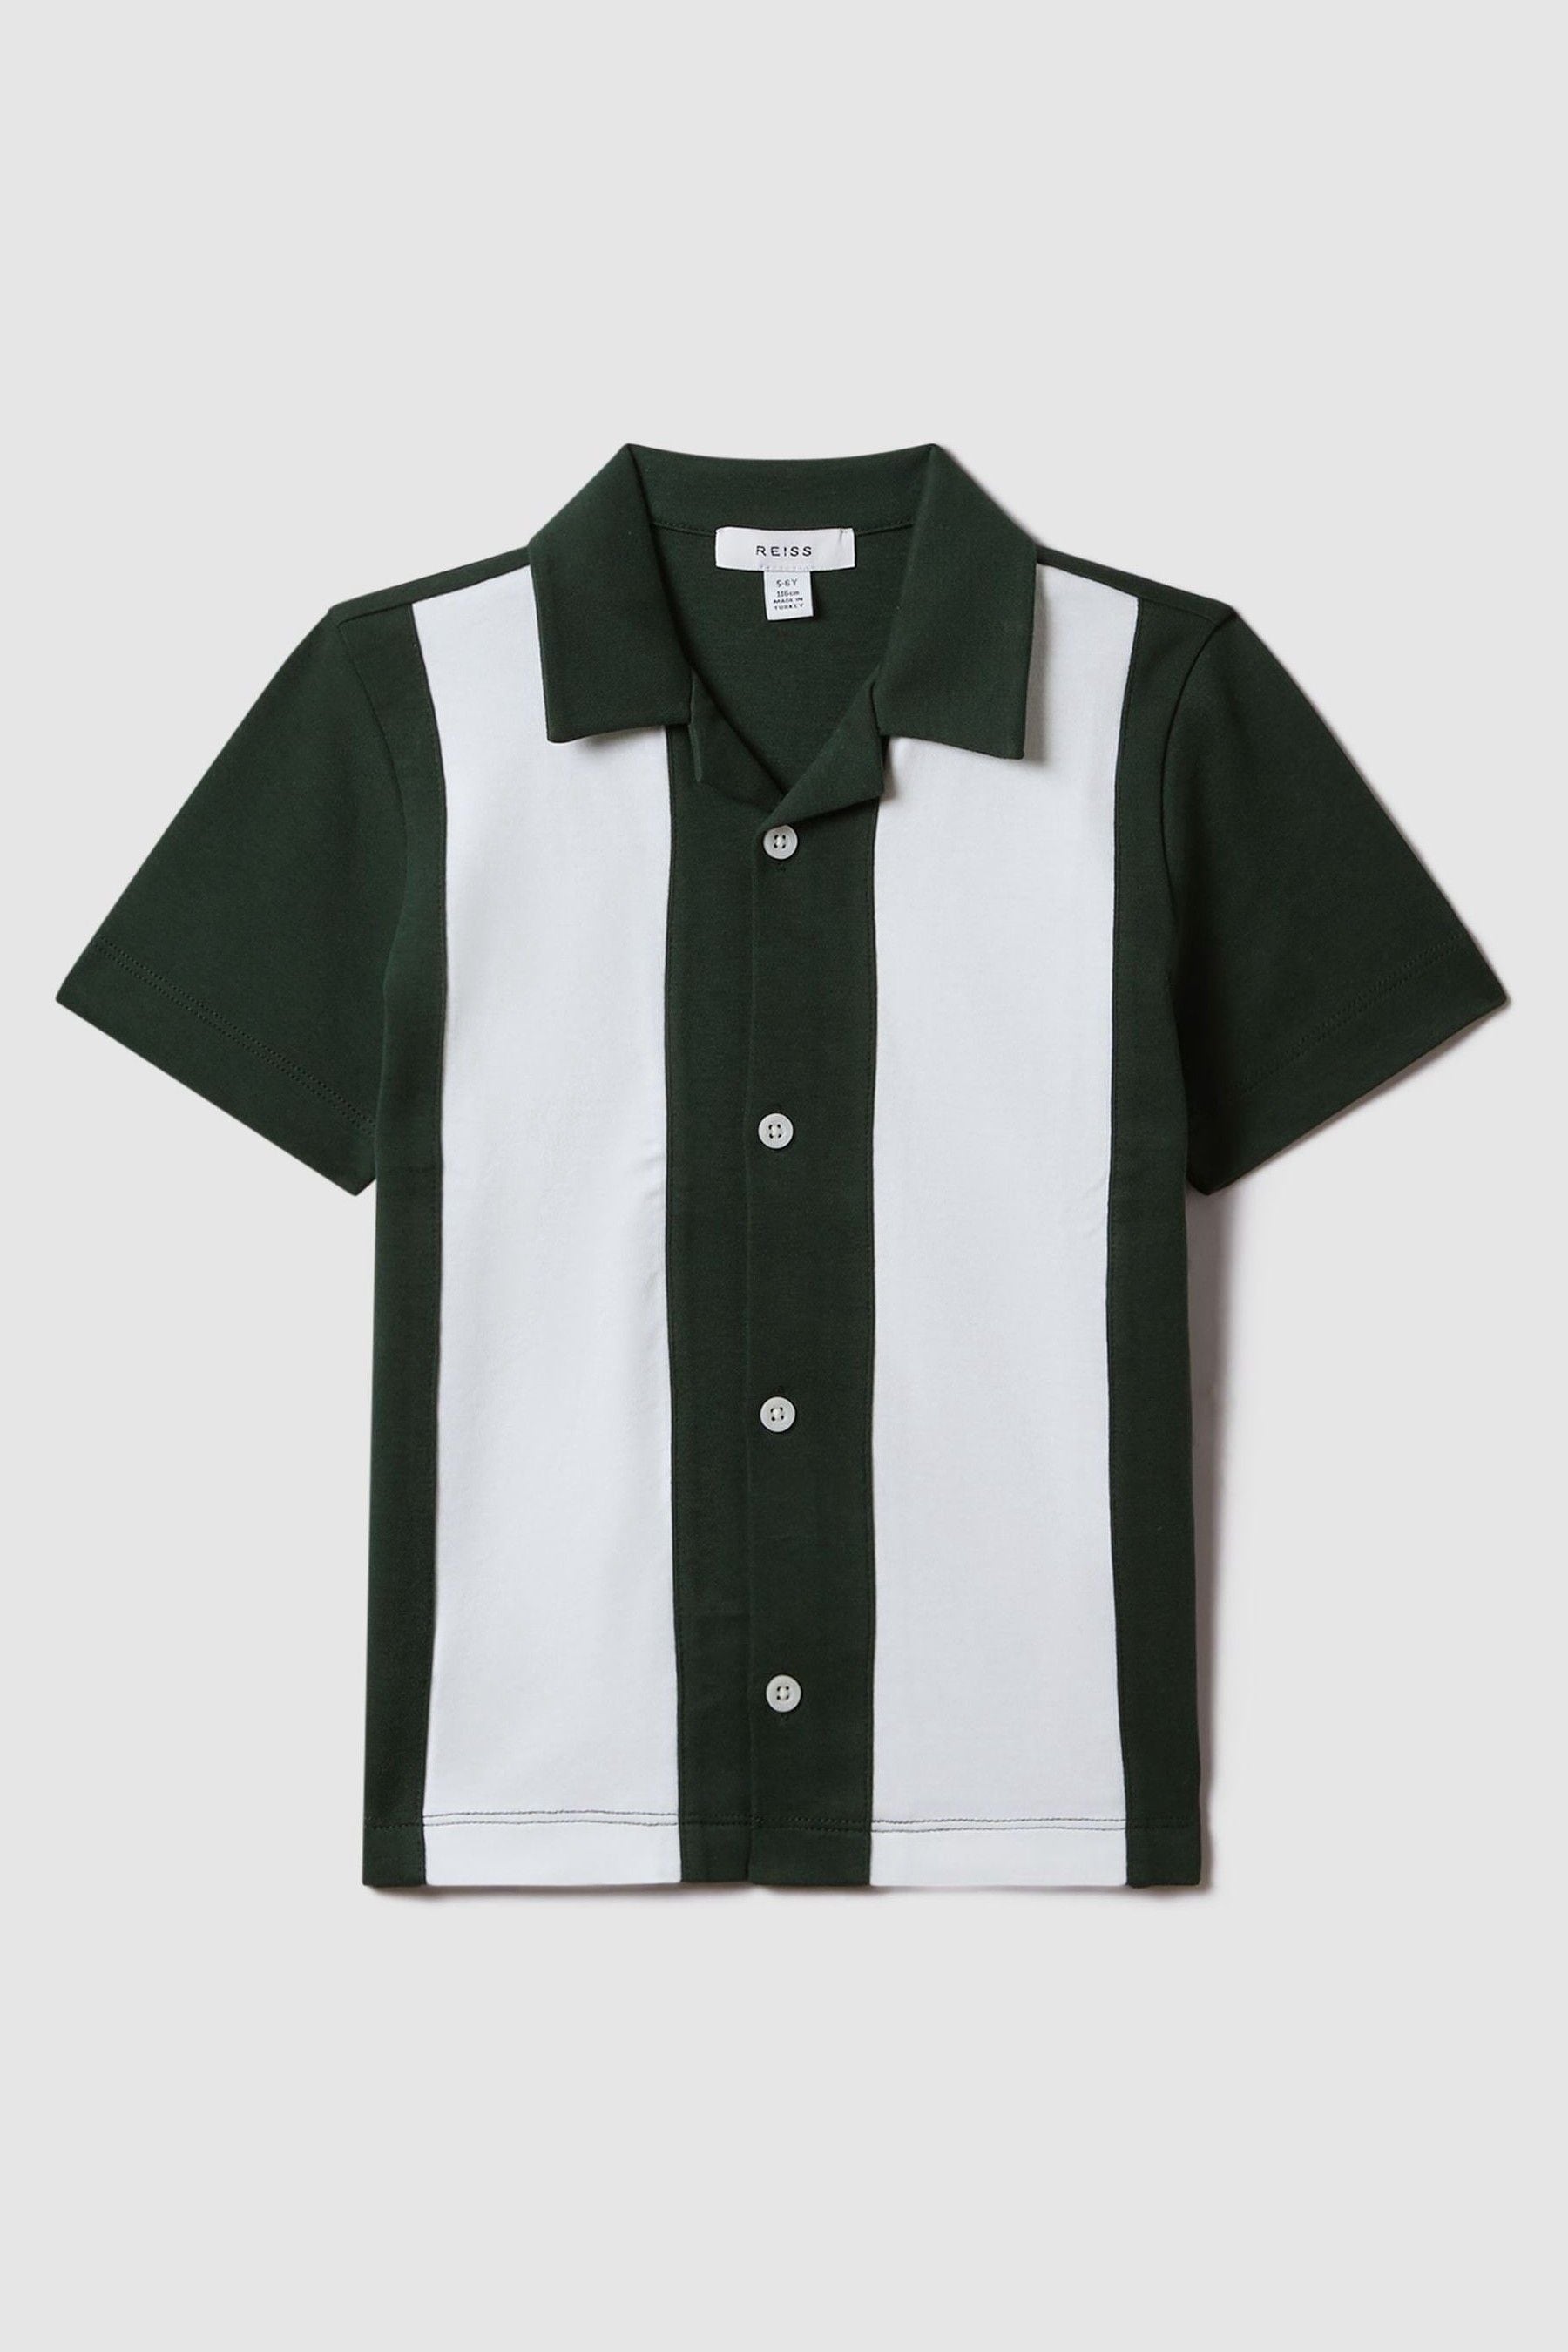 Reiss Skade - Green/ecru Teen Cotton Cuban Collar Bowling Shirt, Uk 13-14 Yrs